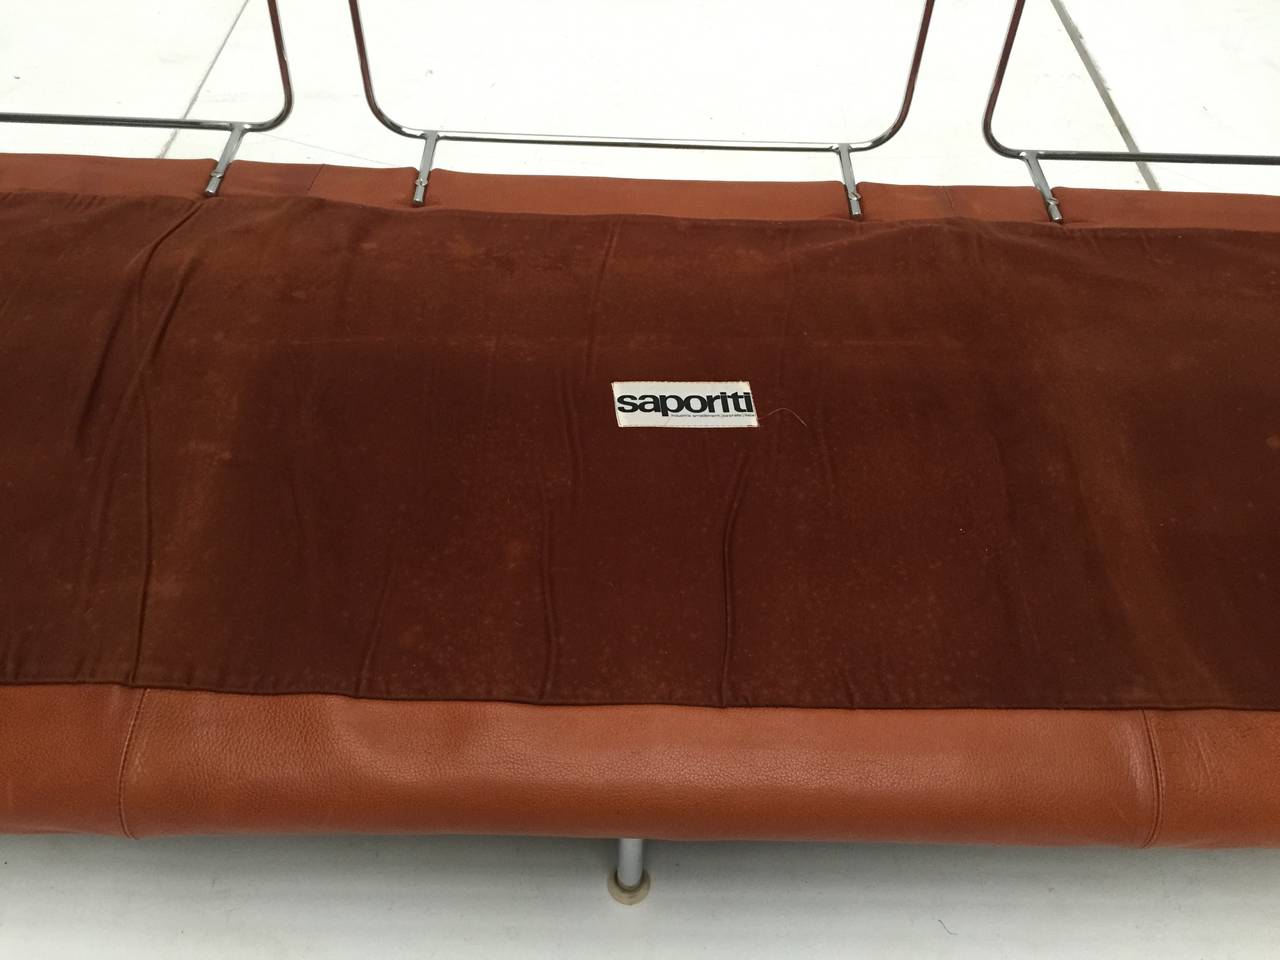 Chrome Rare Three-Seat Leather Sofa by Vittorio Introini for Saporiti, 1968, Published